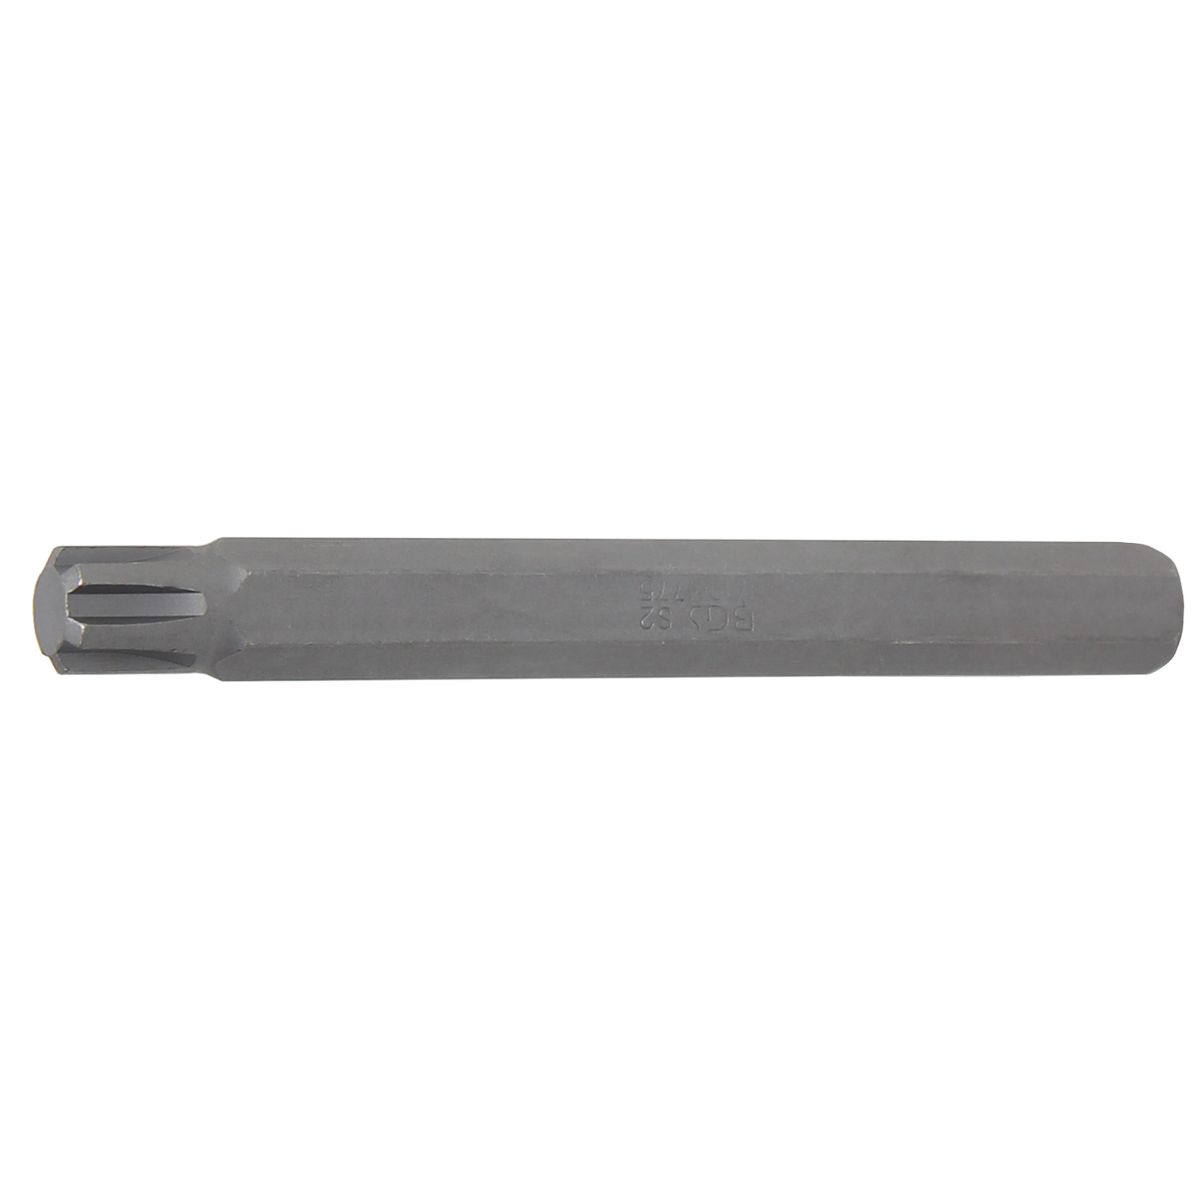 Bit | Länge 100 mm | Antrieb Außensechskant 10 mm (3/8") | Keil-Profil (für RIBE) M10